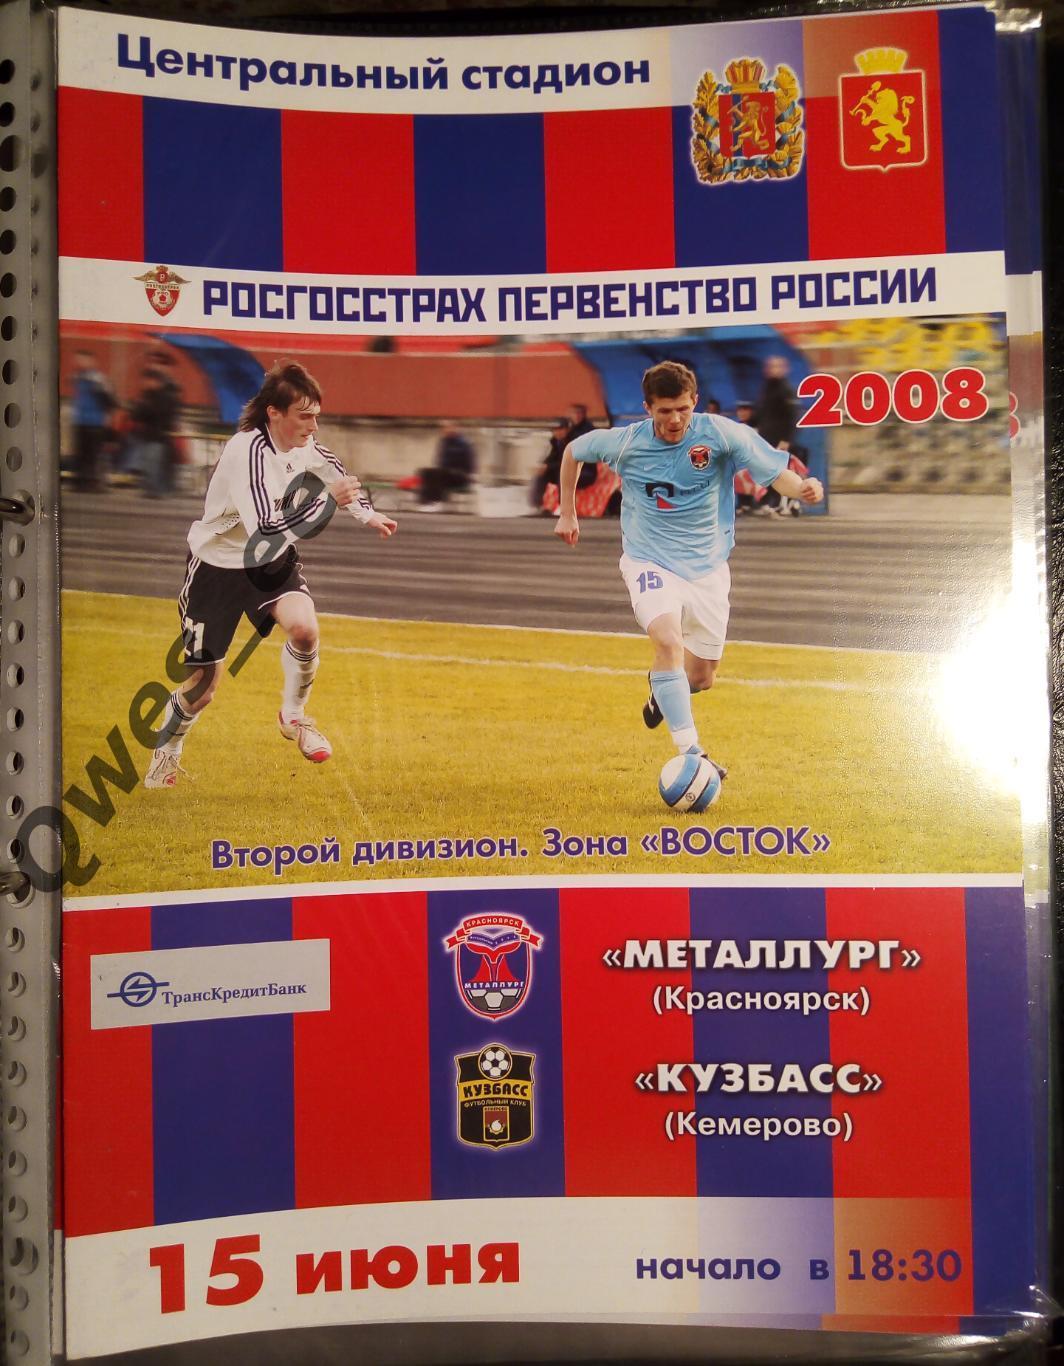 Металлург Красноярск - Кузбасс Кемерово 15 июня 2008